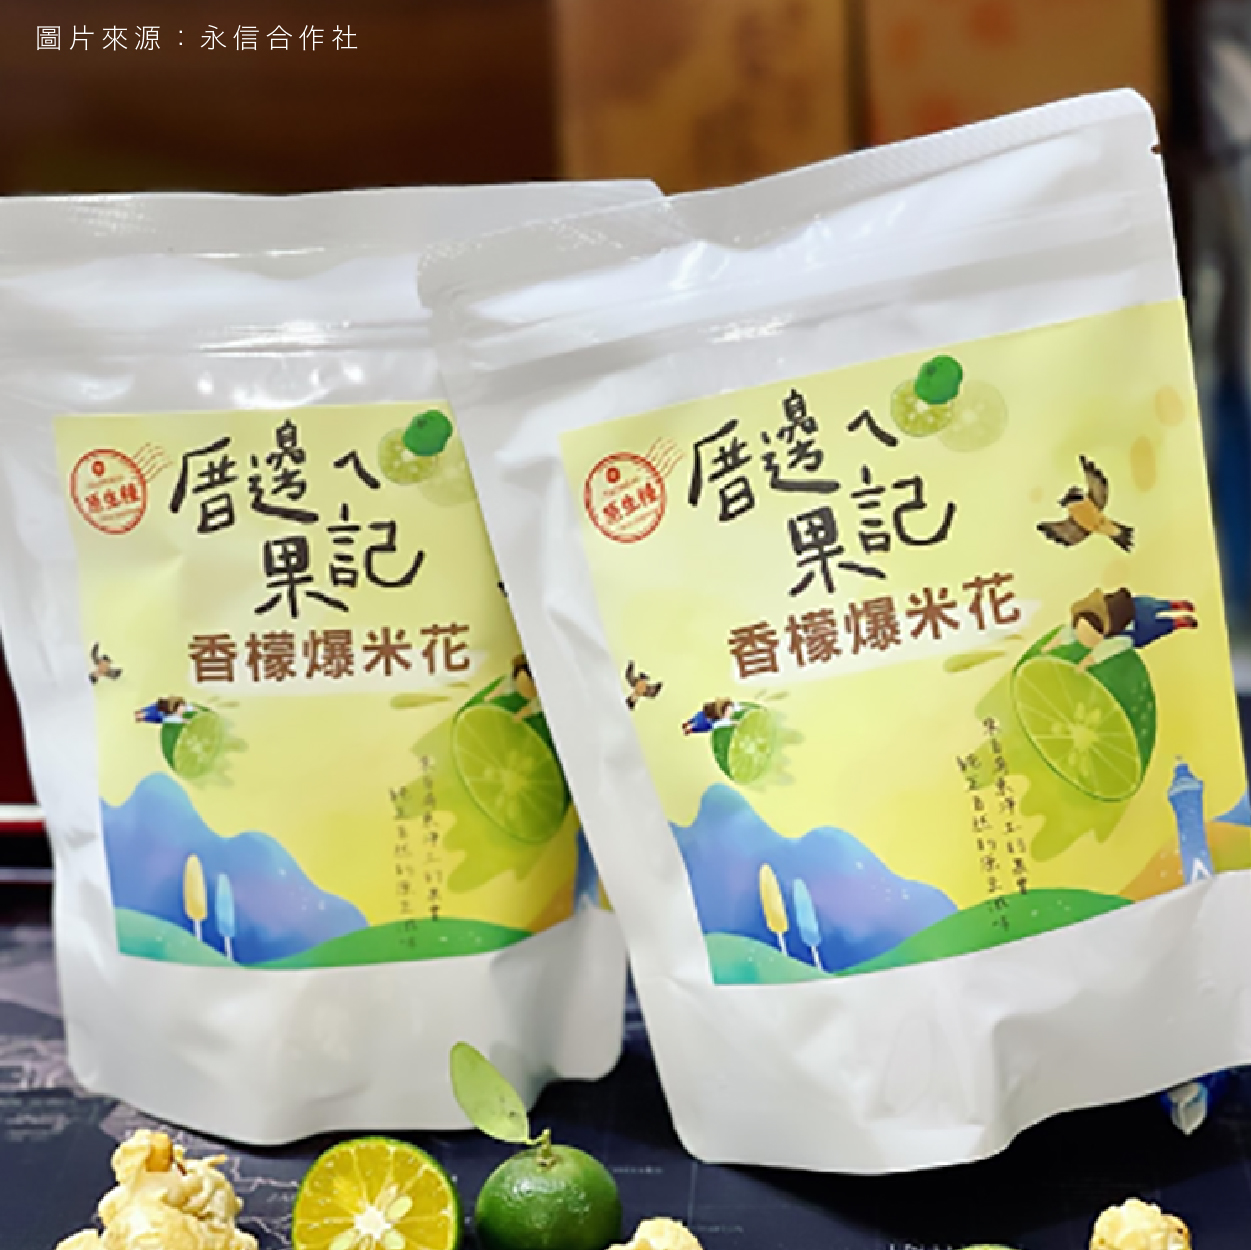 厝邊ㄟ果記 香檬爆米花 感受台灣原生香檬的酸甜與芬芳